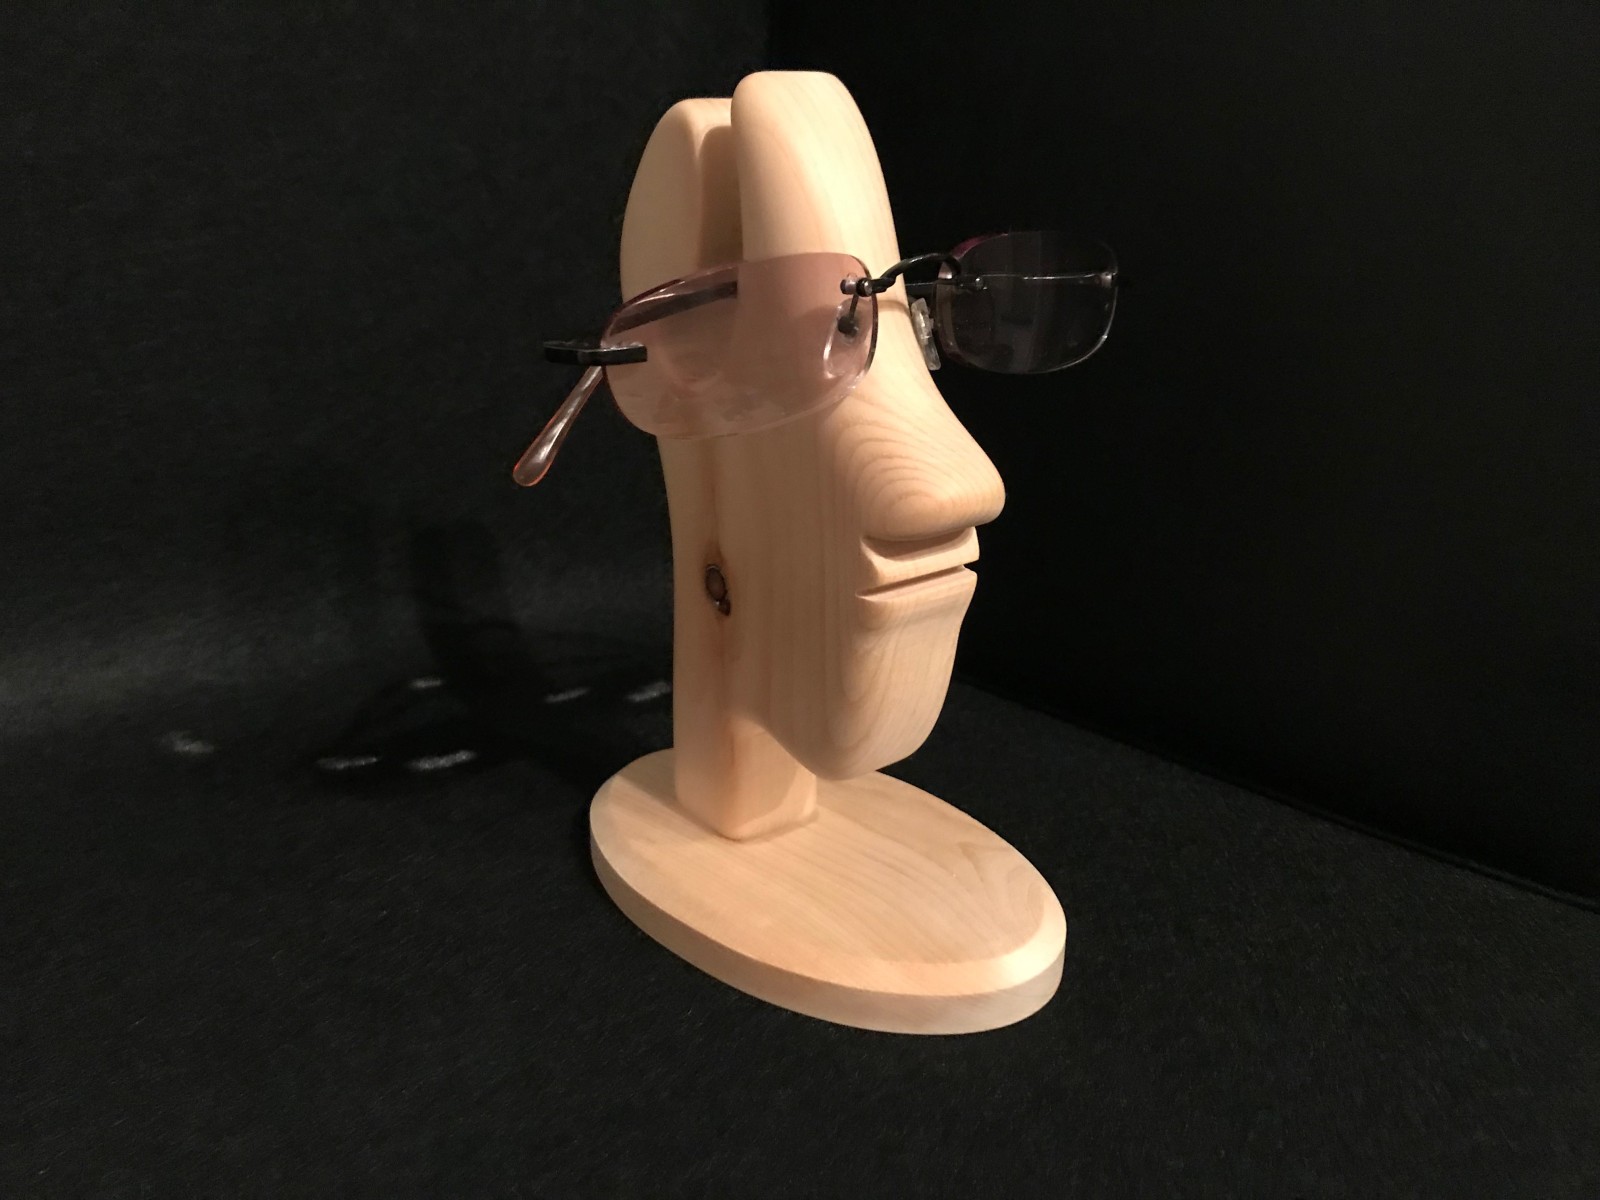 Brillenhalter aus Zirbenholz